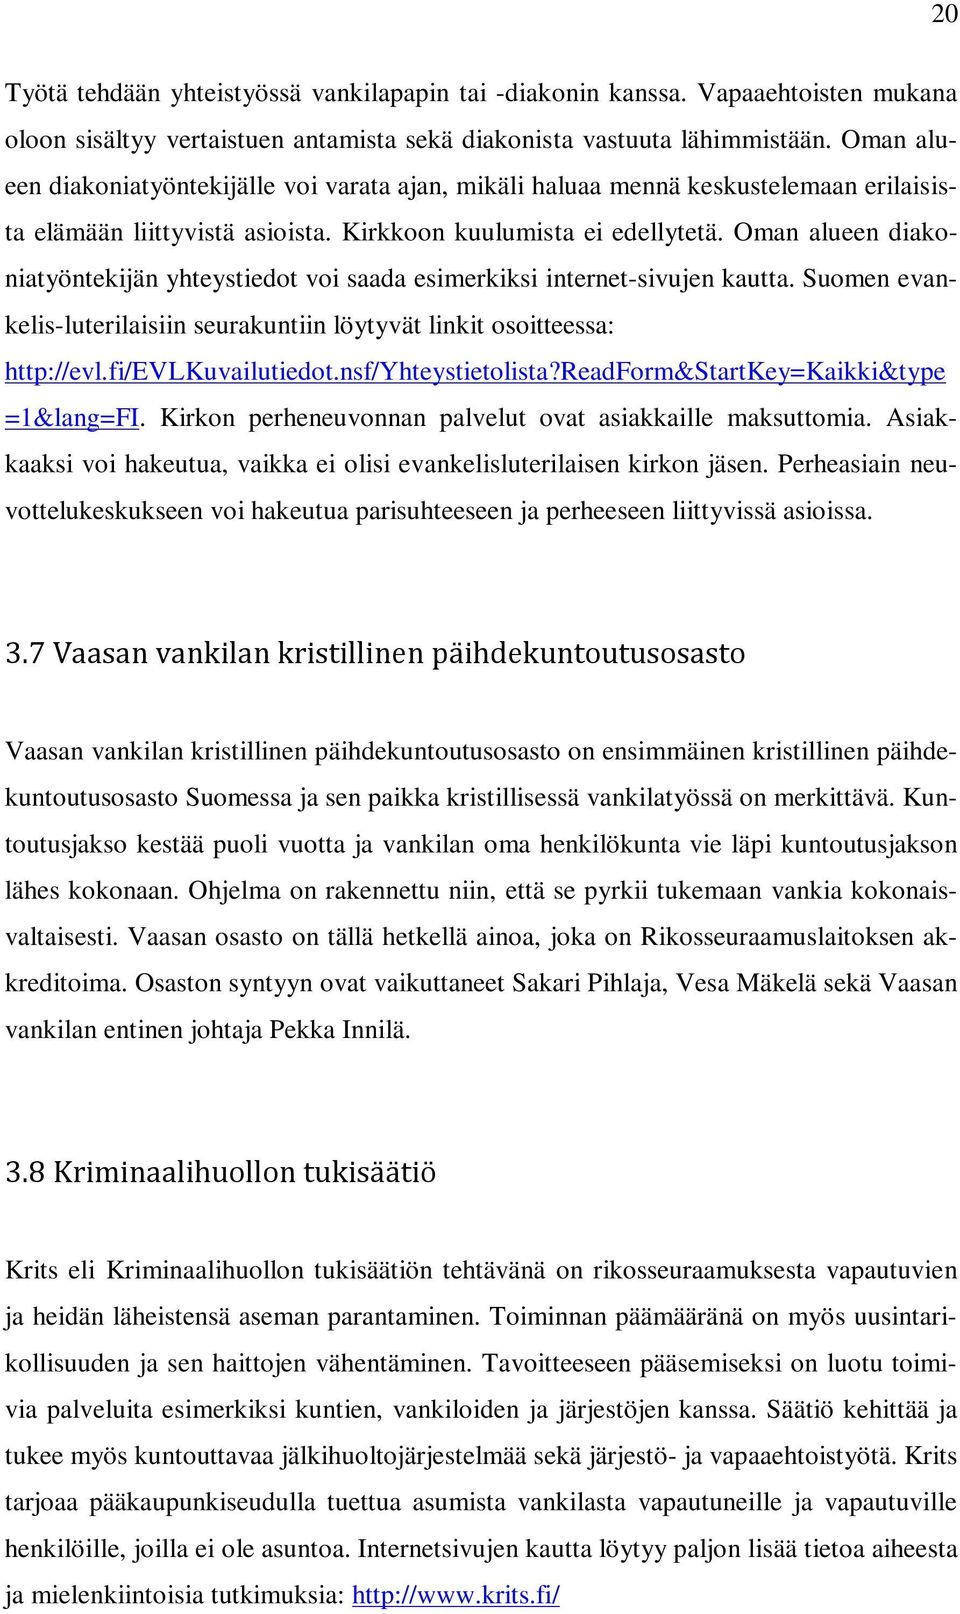 Oman alueen diakoniatyöntekijän yhteystiedot voi saada esimerkiksi internet-sivujen kautta. Suomen evankelis-luterilaisiin seurakuntiin löytyvät linkit osoitteessa: http://evl.fi/evlkuvailutiedot.